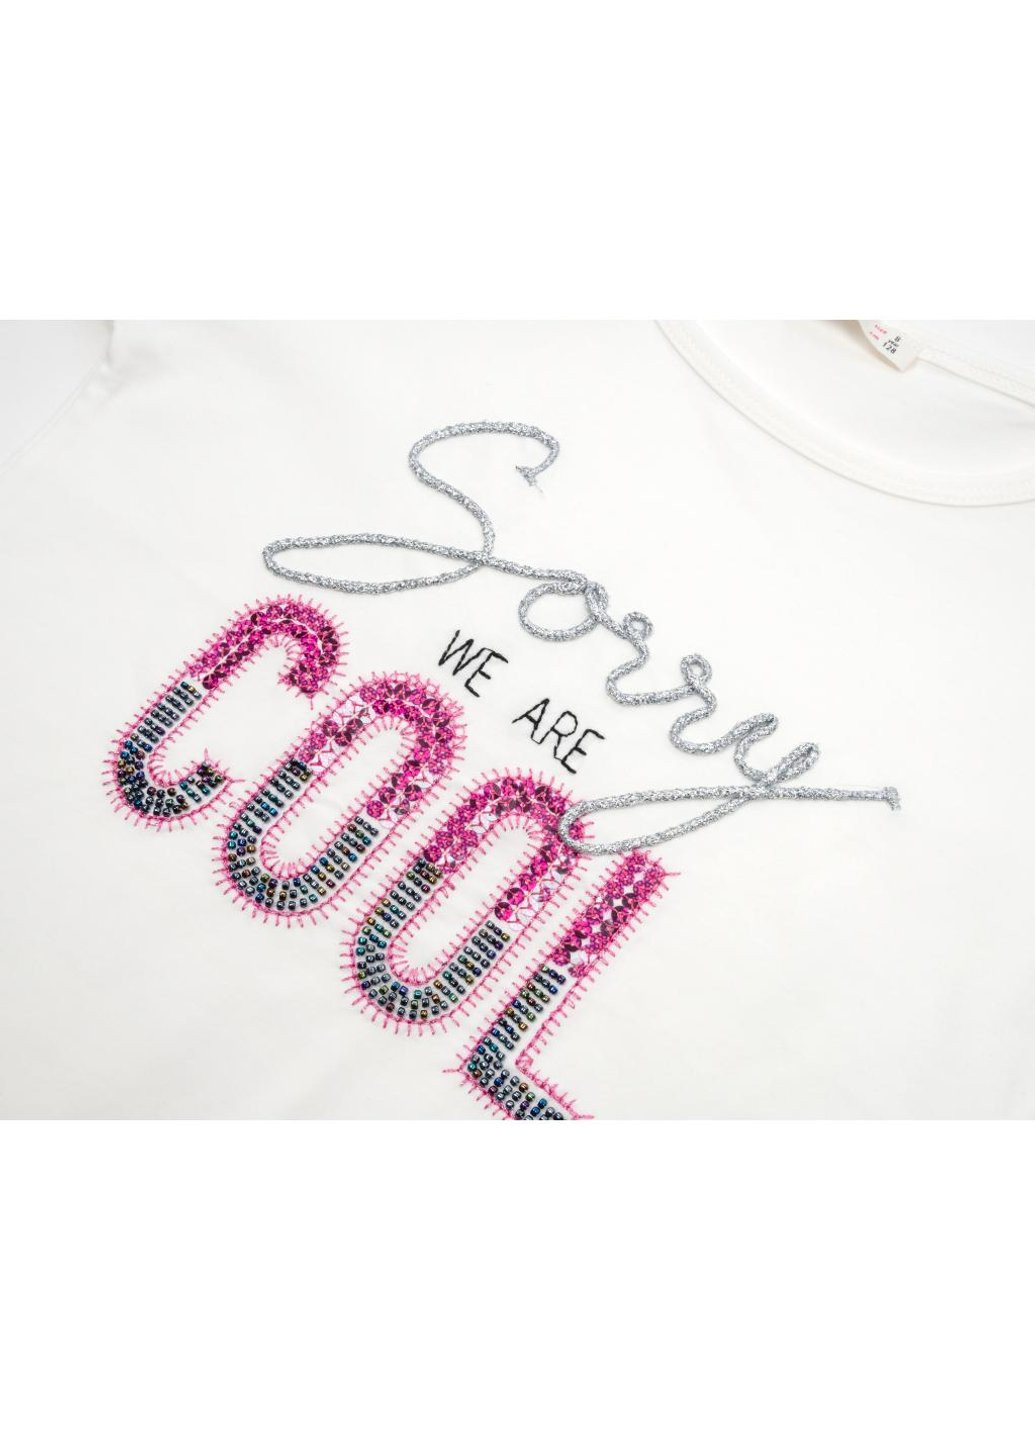 Комбинированная футболка детская "sorry we are cool" (14281-128g-cream) Breeze